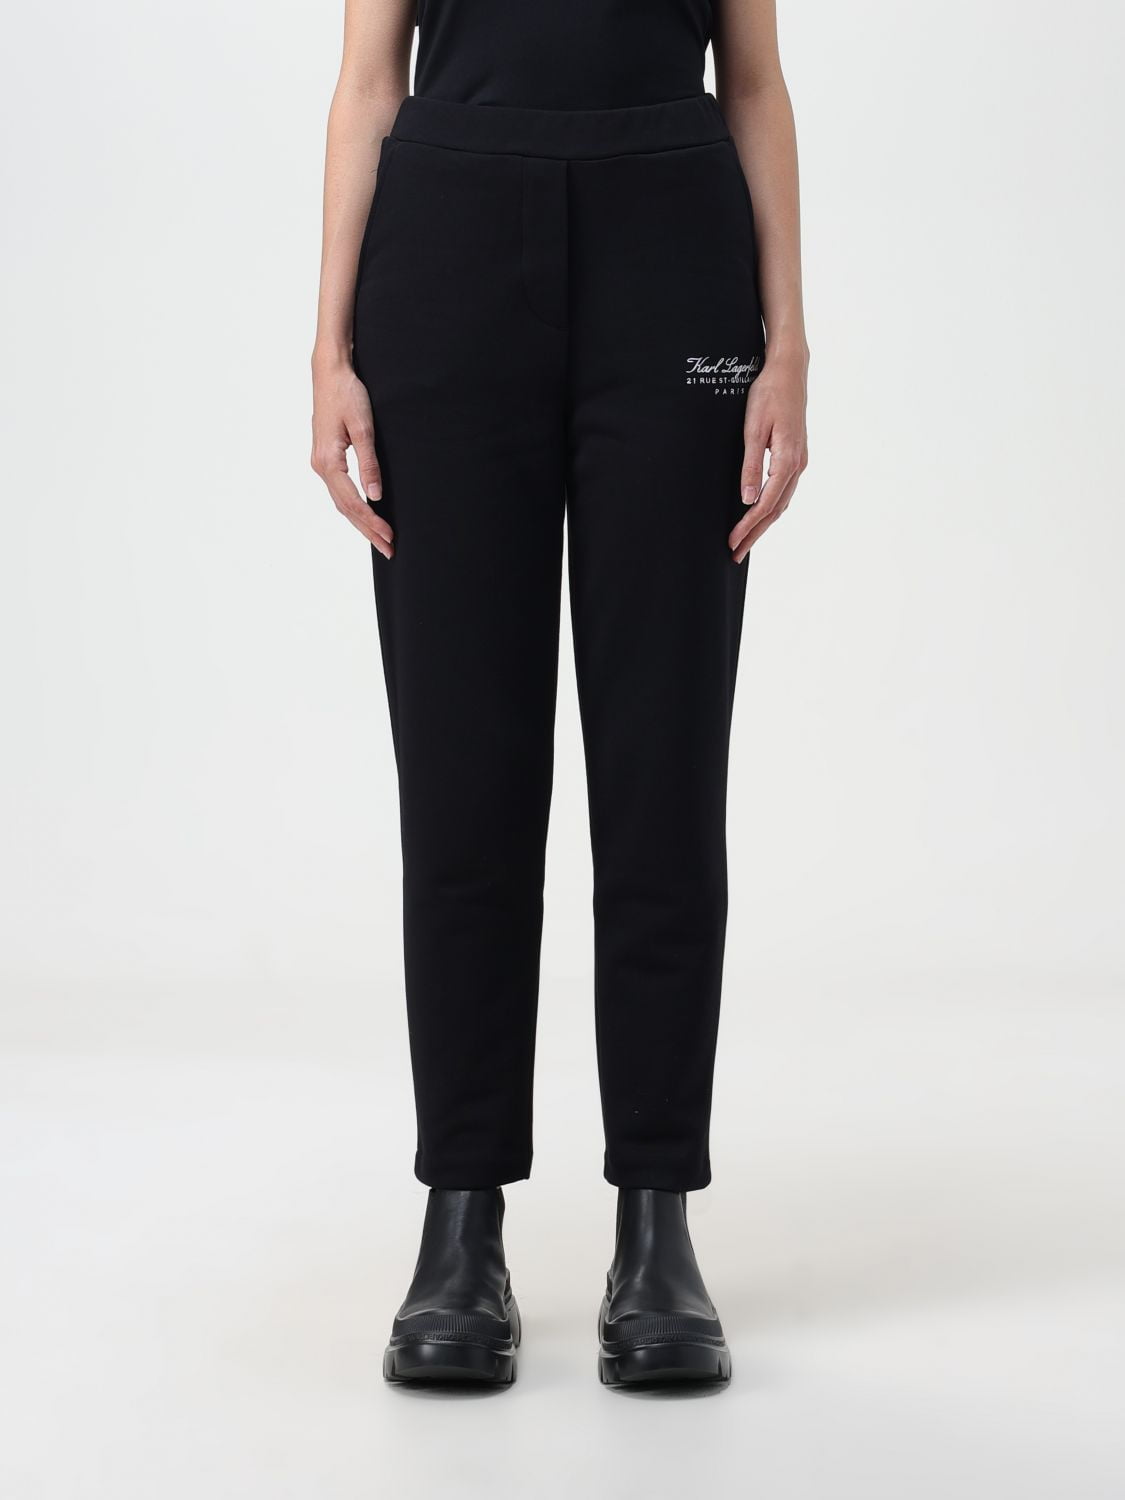 Karl Lagerfeld Pants Woman Black Woman - Walmart.com